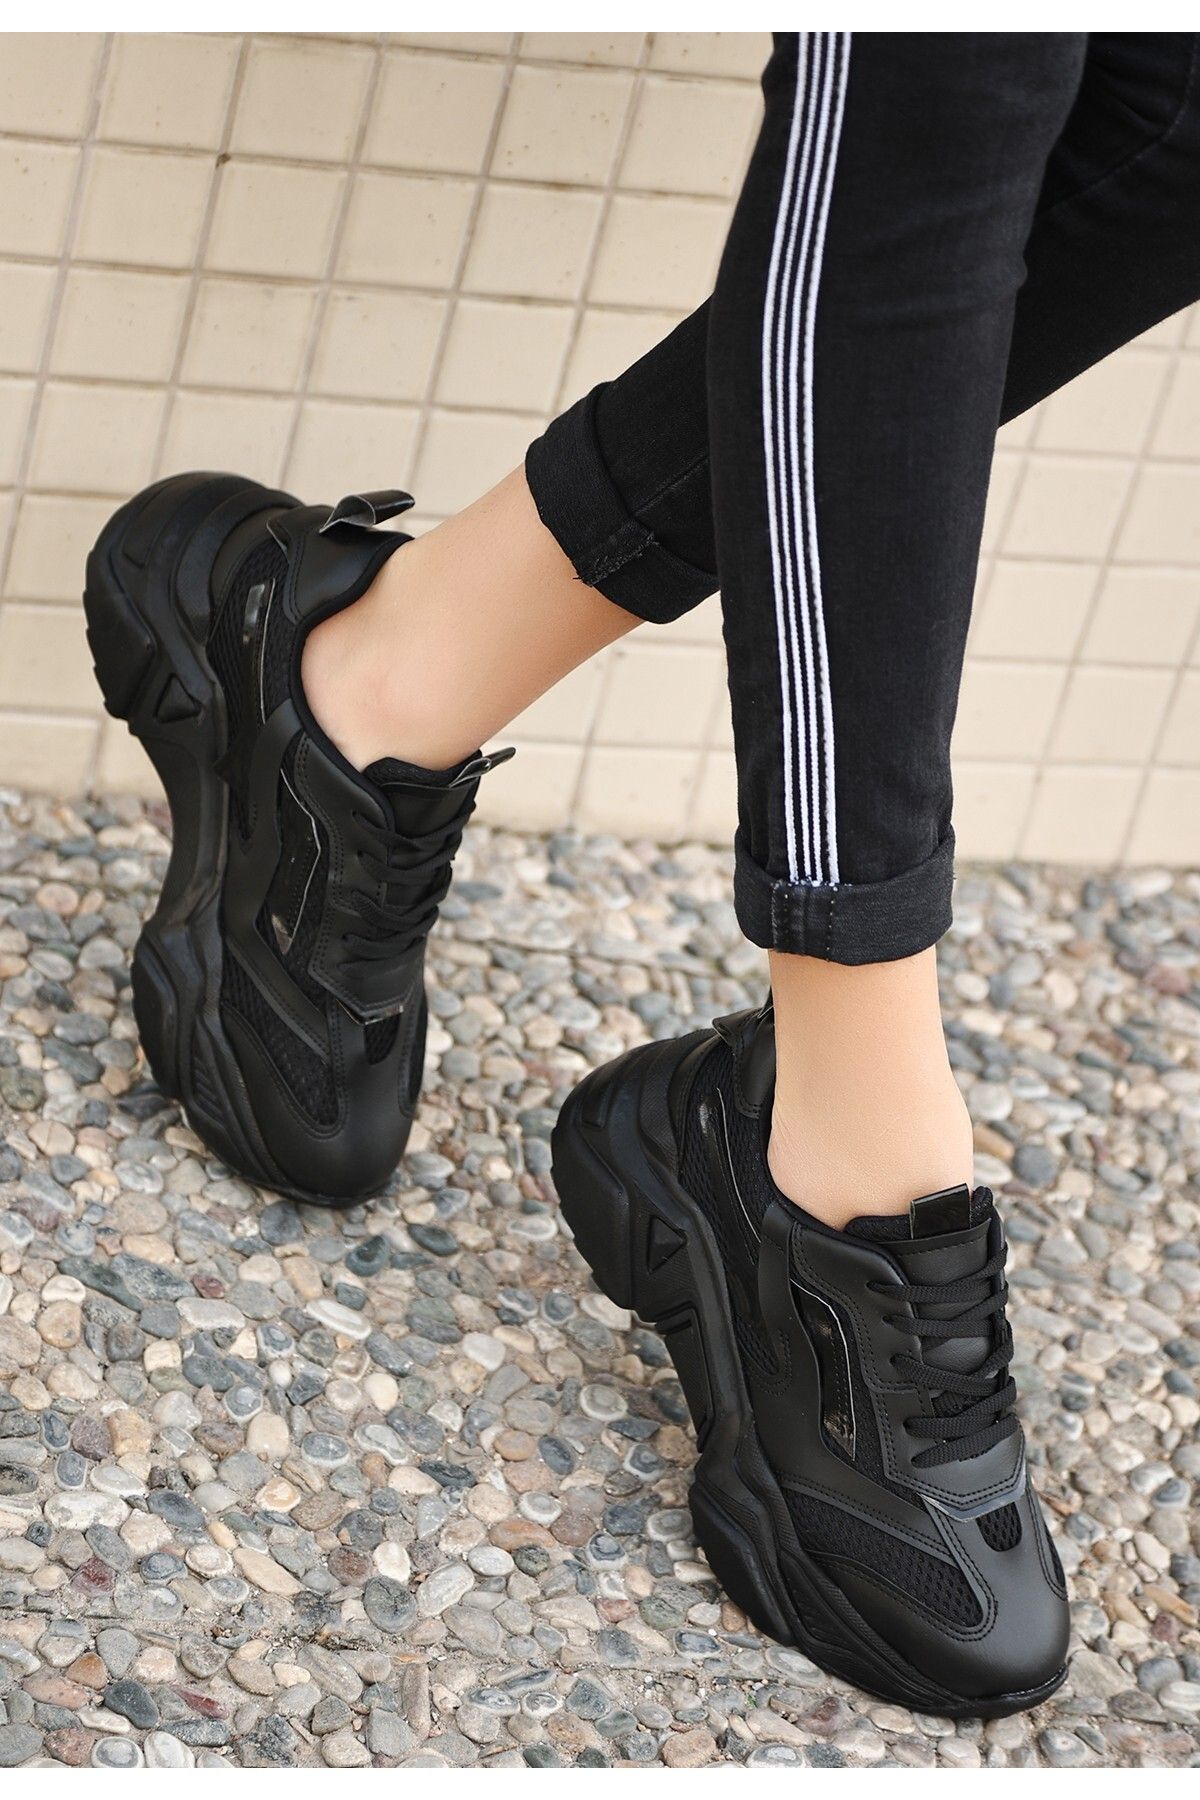 Maldari Dica Siyah Cilt Bağcıklı Spor Ayakkabı